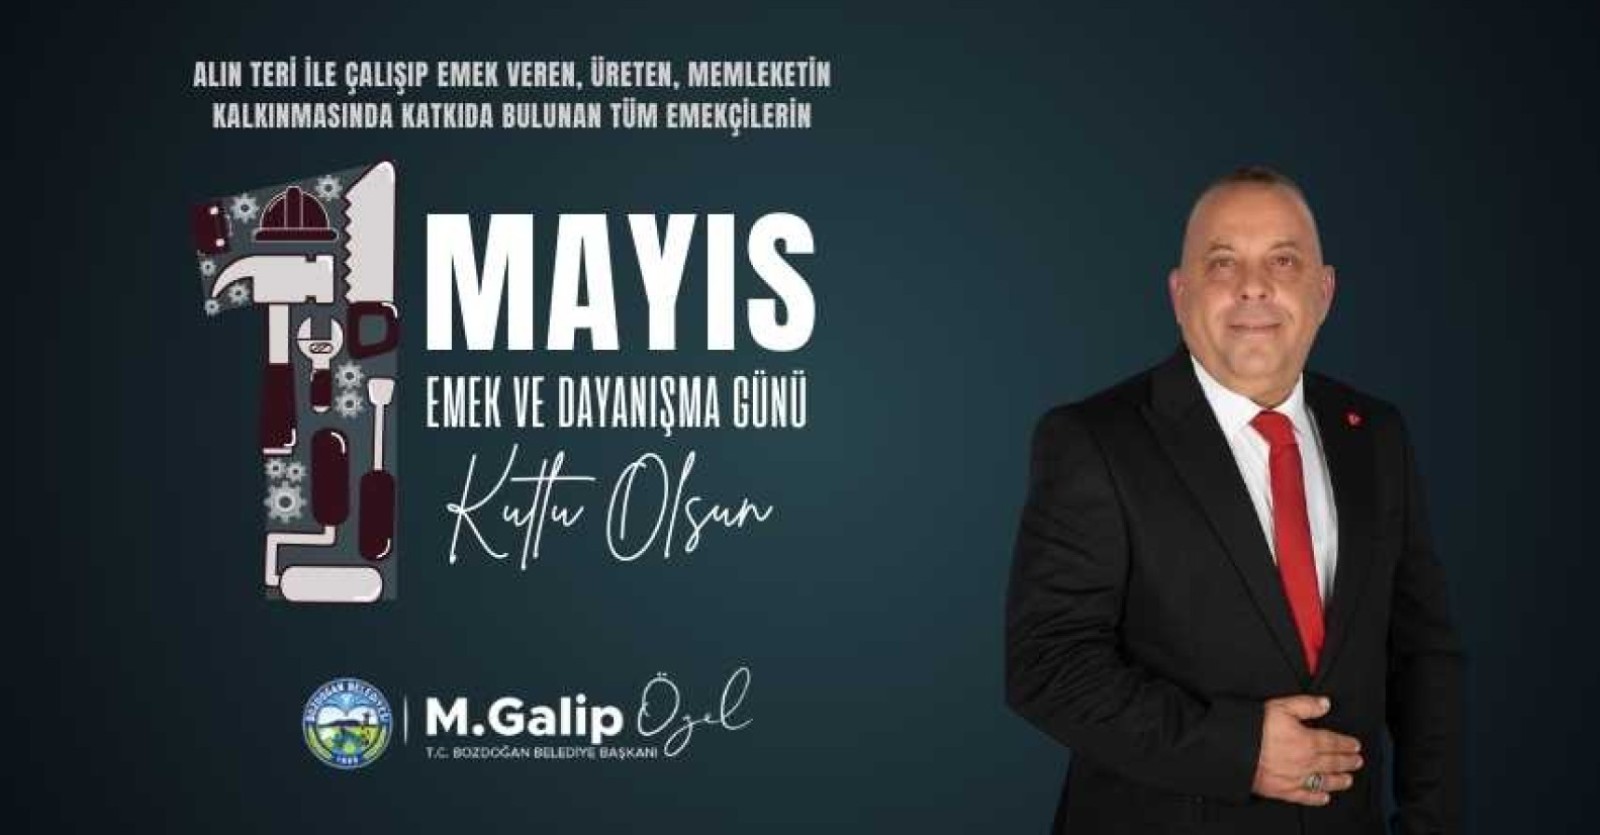 Bozdoğan Belediye Başkanı M. Galip Özel, 1 Mayıs İşçi Bayramı dolayısıyla anlamlı bir video paylaştı.